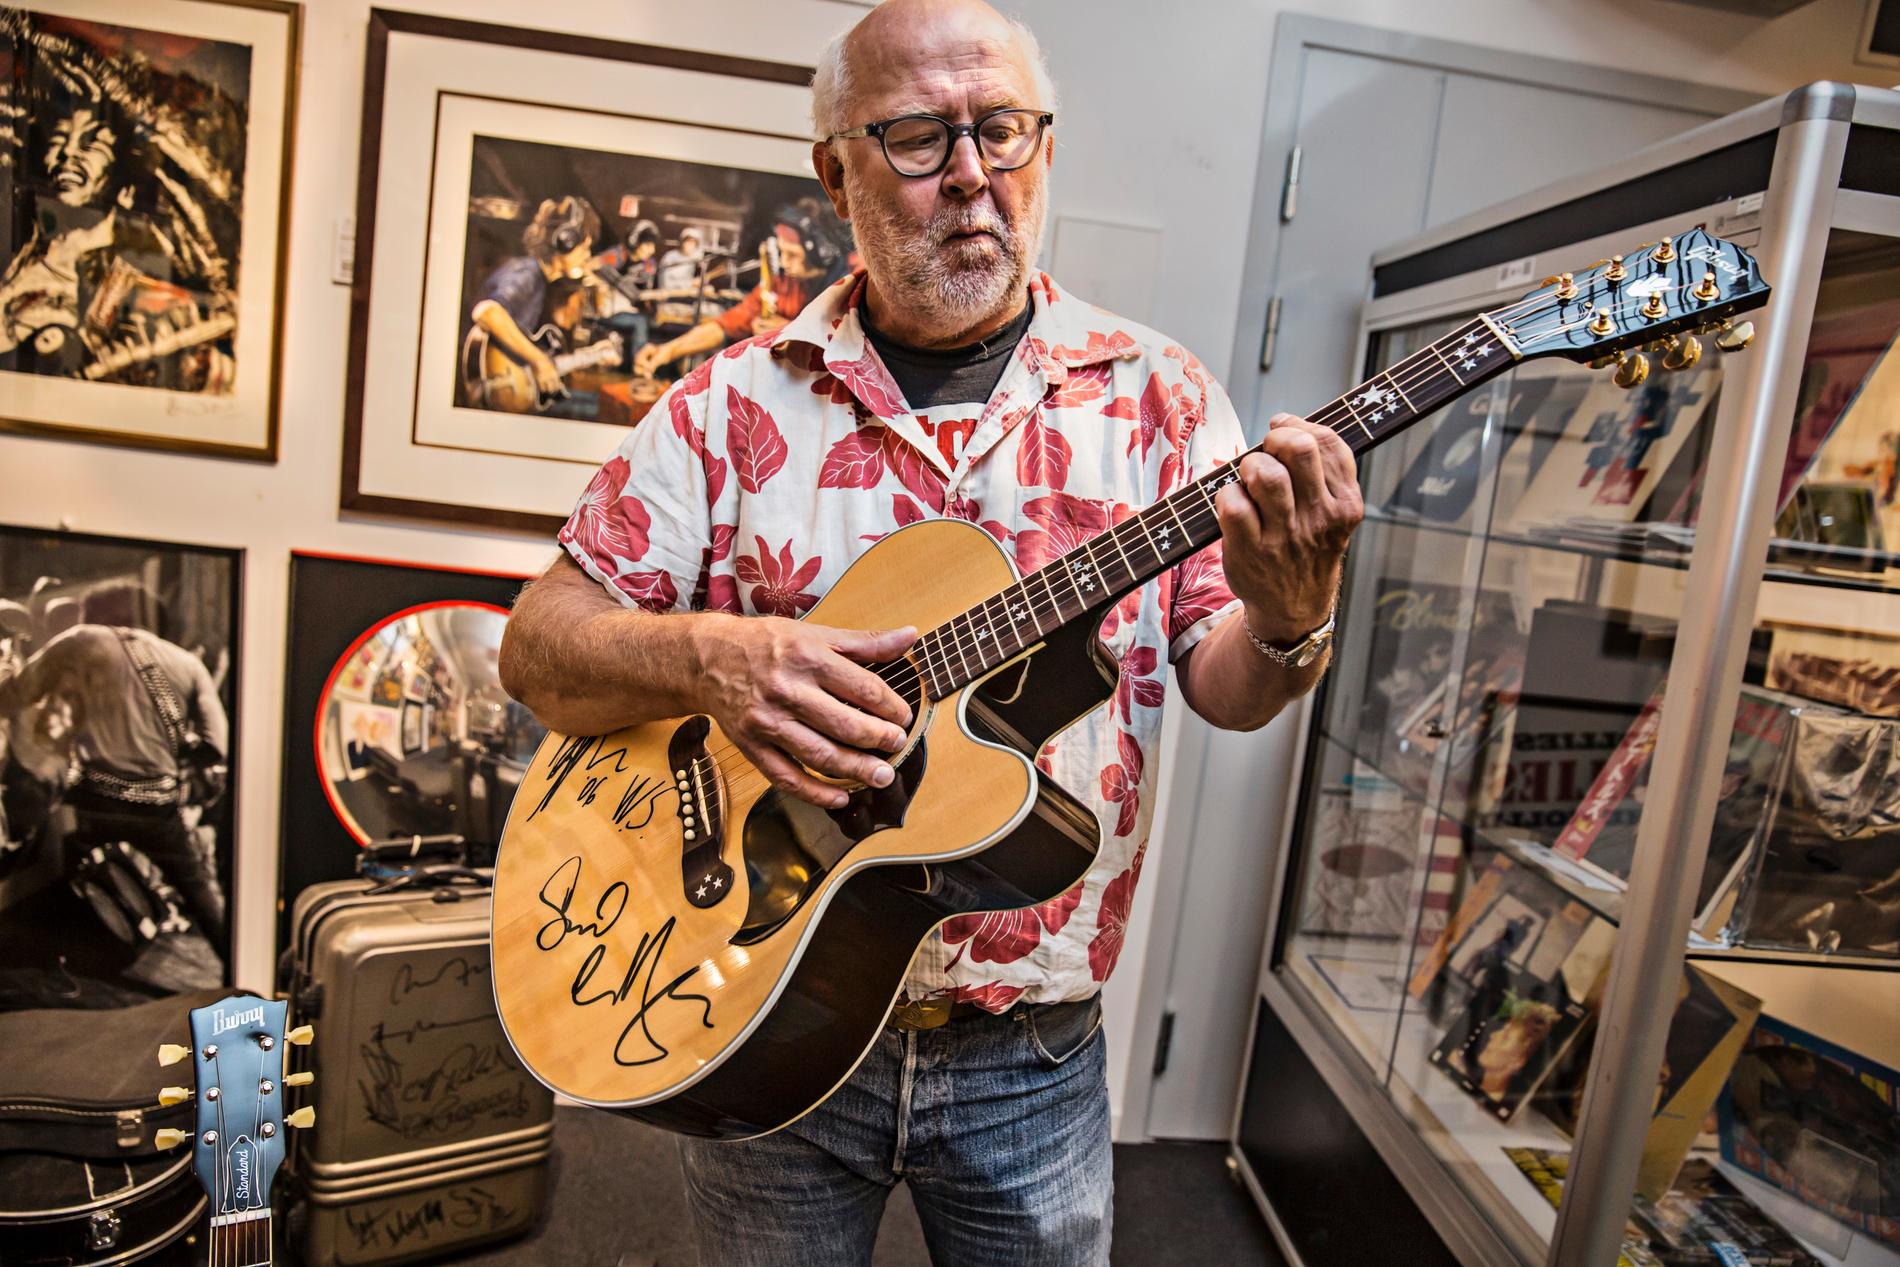 Stockholms auktionsverk hade 2014 sin första renodlade pop-rock-nostalgiauktion, och Svante var förstås där och kollade in dyrgriparna i förväg. Här med en Gibson J160, signerad av David Coverdale och Doug Aldrich, Deep Purple och Whitesnake.